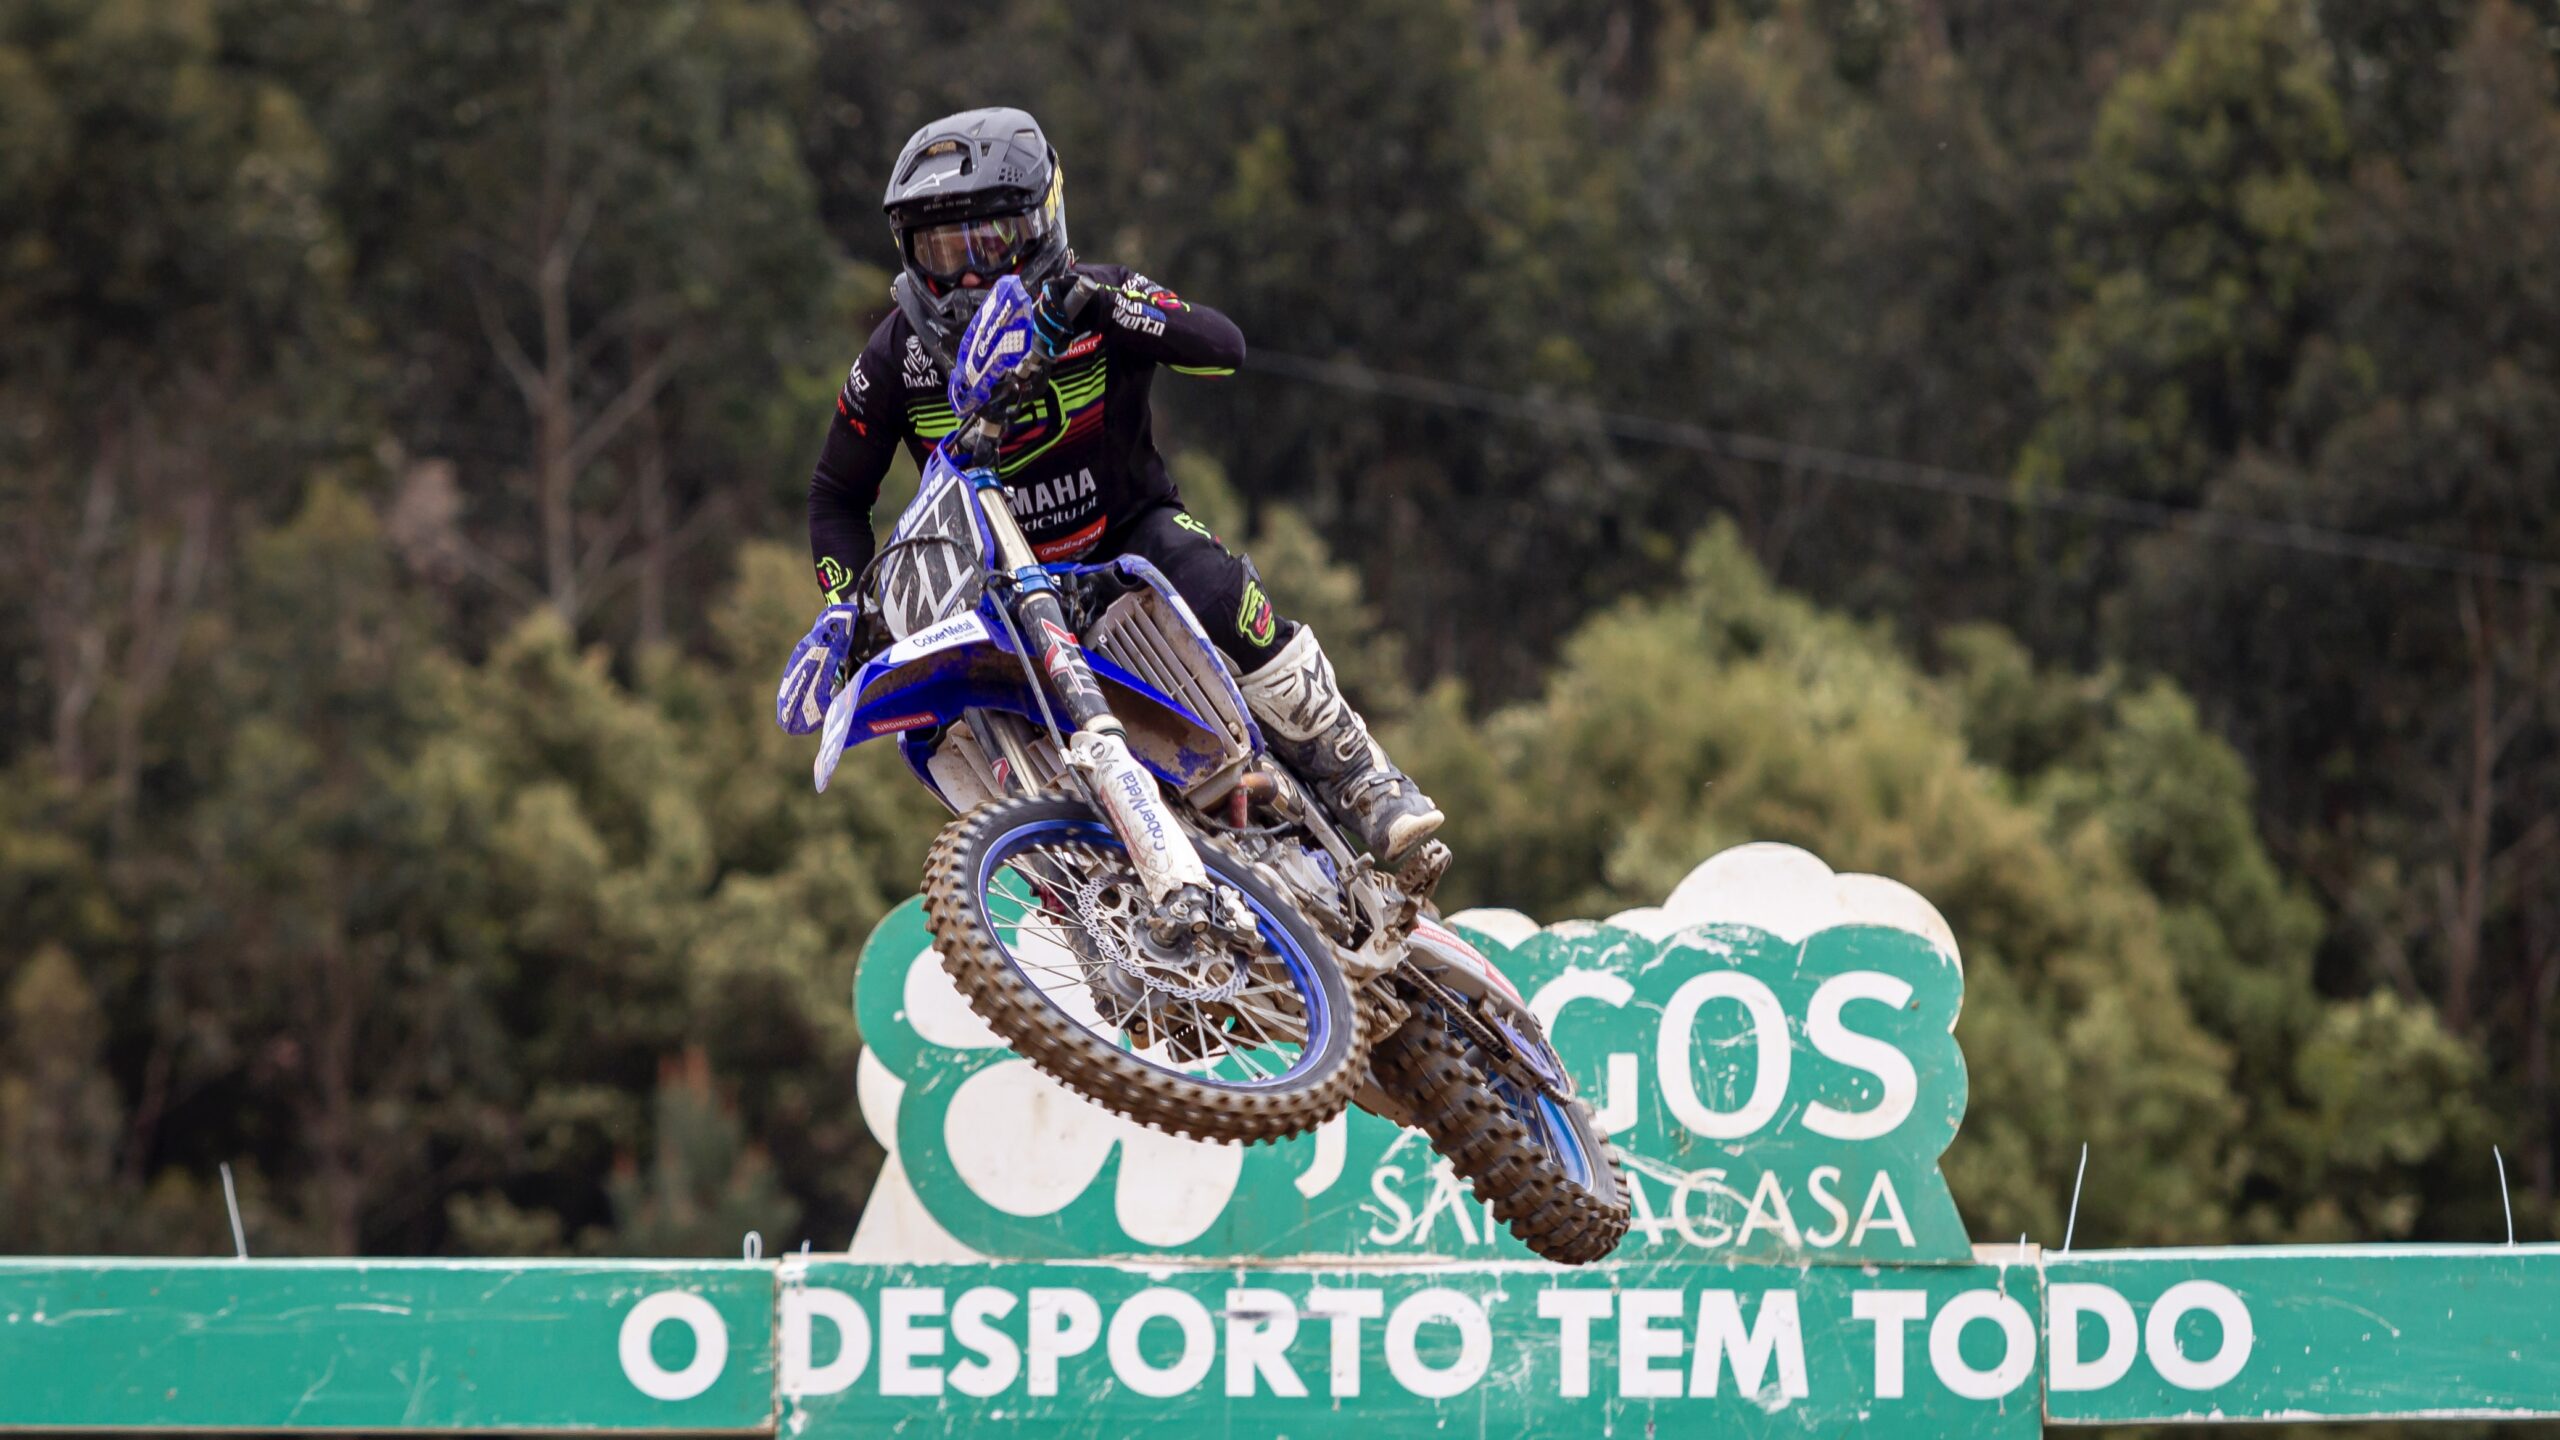 CN Motocross: Alteração de calendário brasileiro permite presença de Paulo Alberto em São Quintino thumbnail